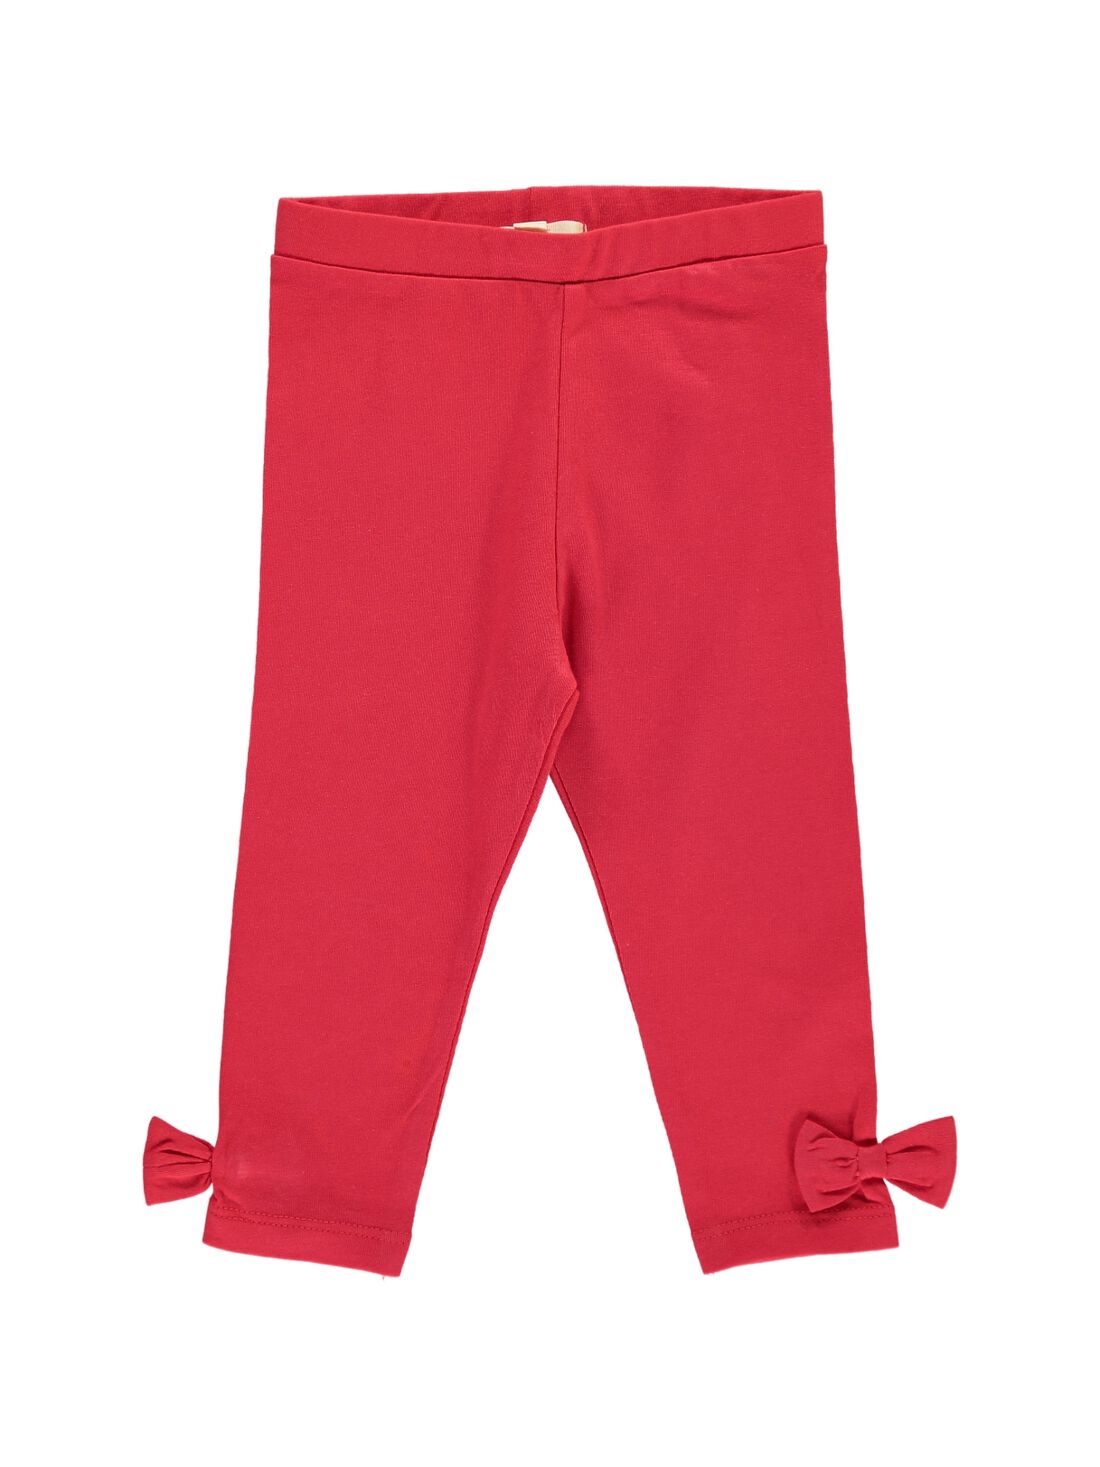 Velour Baby Girl Rhinestone Studded Leggings - Red